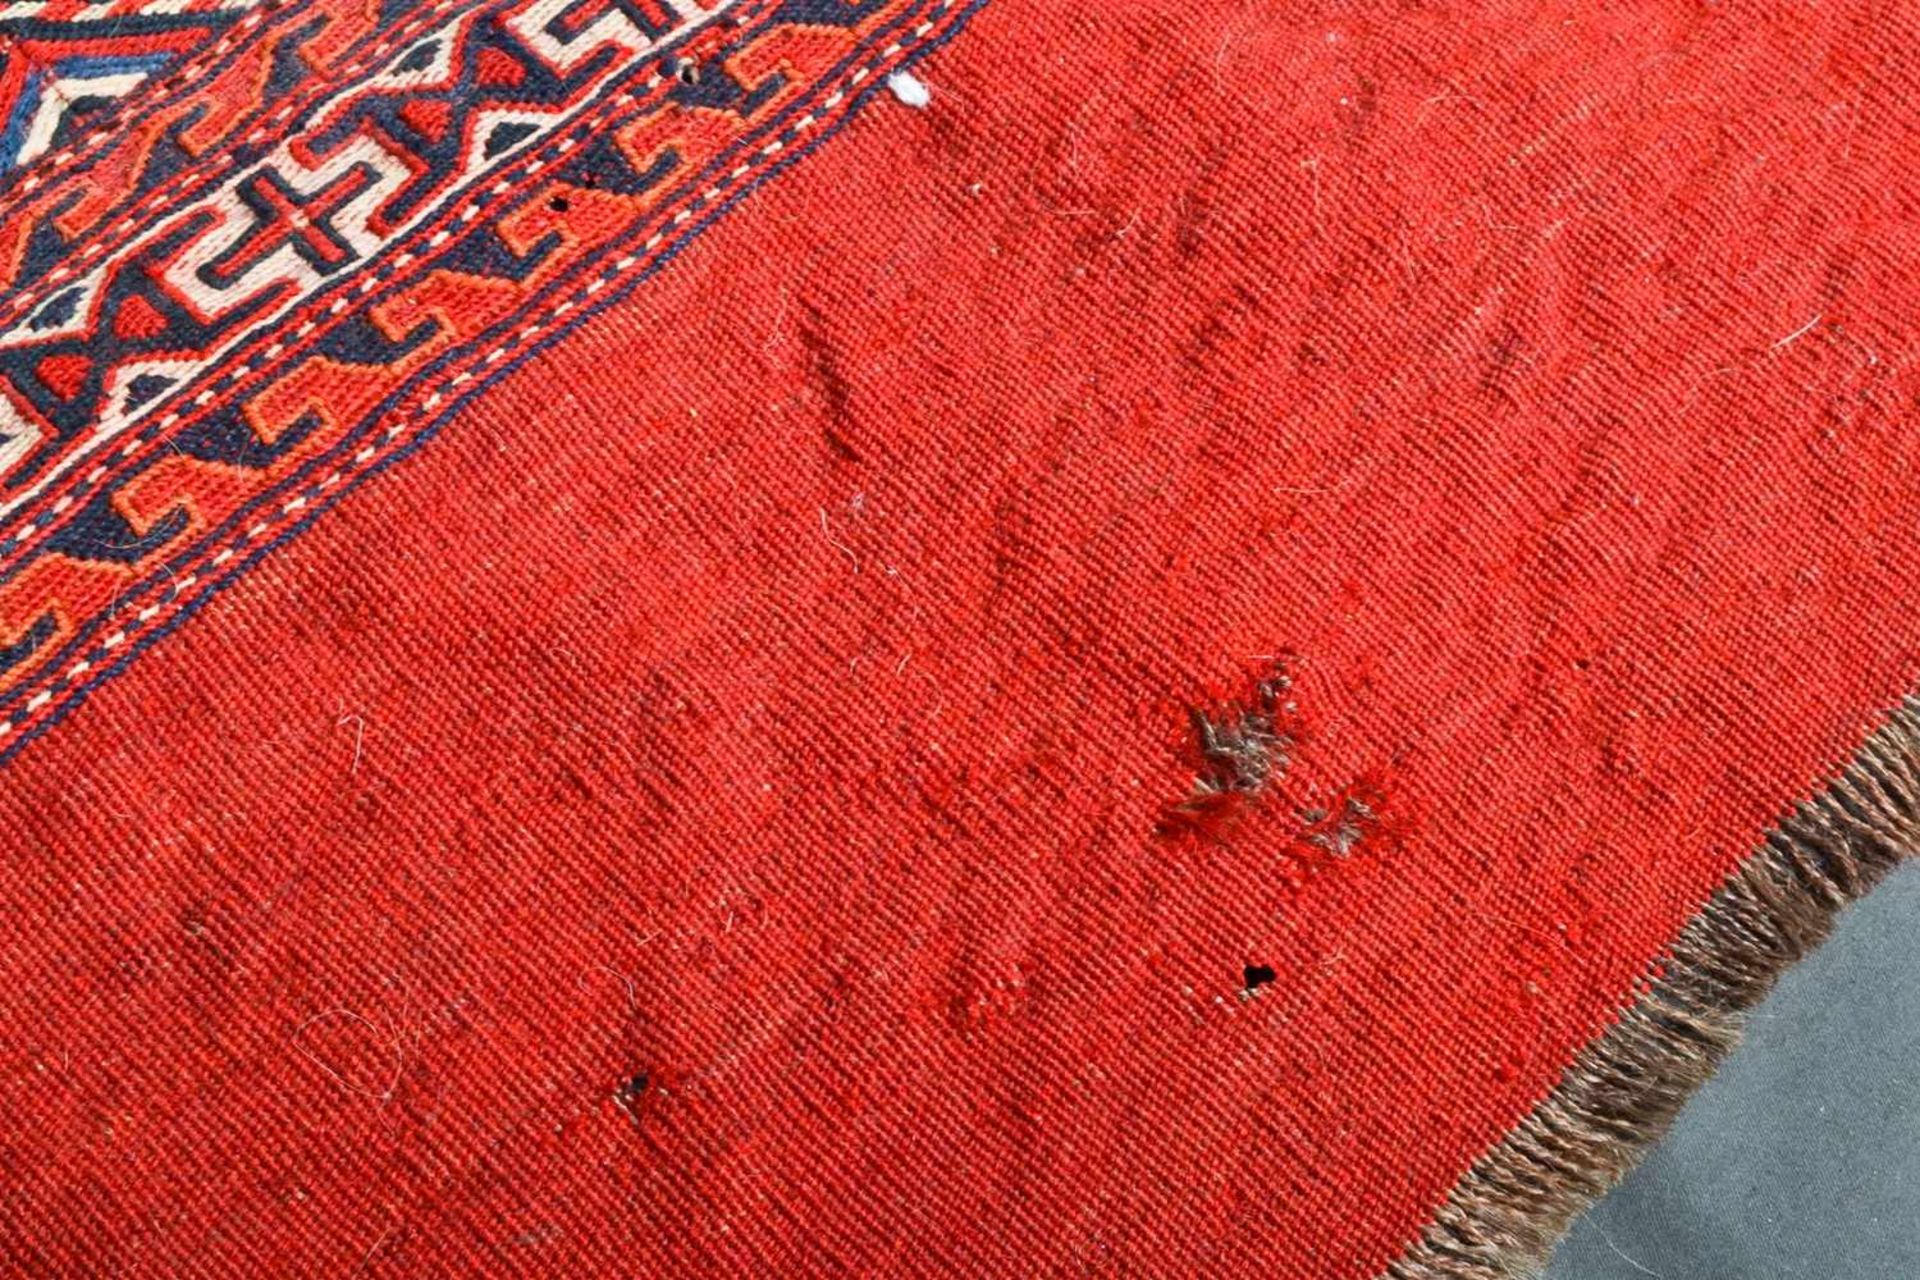 3teiliges Konvolut "alte und antike" Teppiche, bestehend aus drei versch. Kelim bzw. Flachgewebe- - Bild 6 aus 14